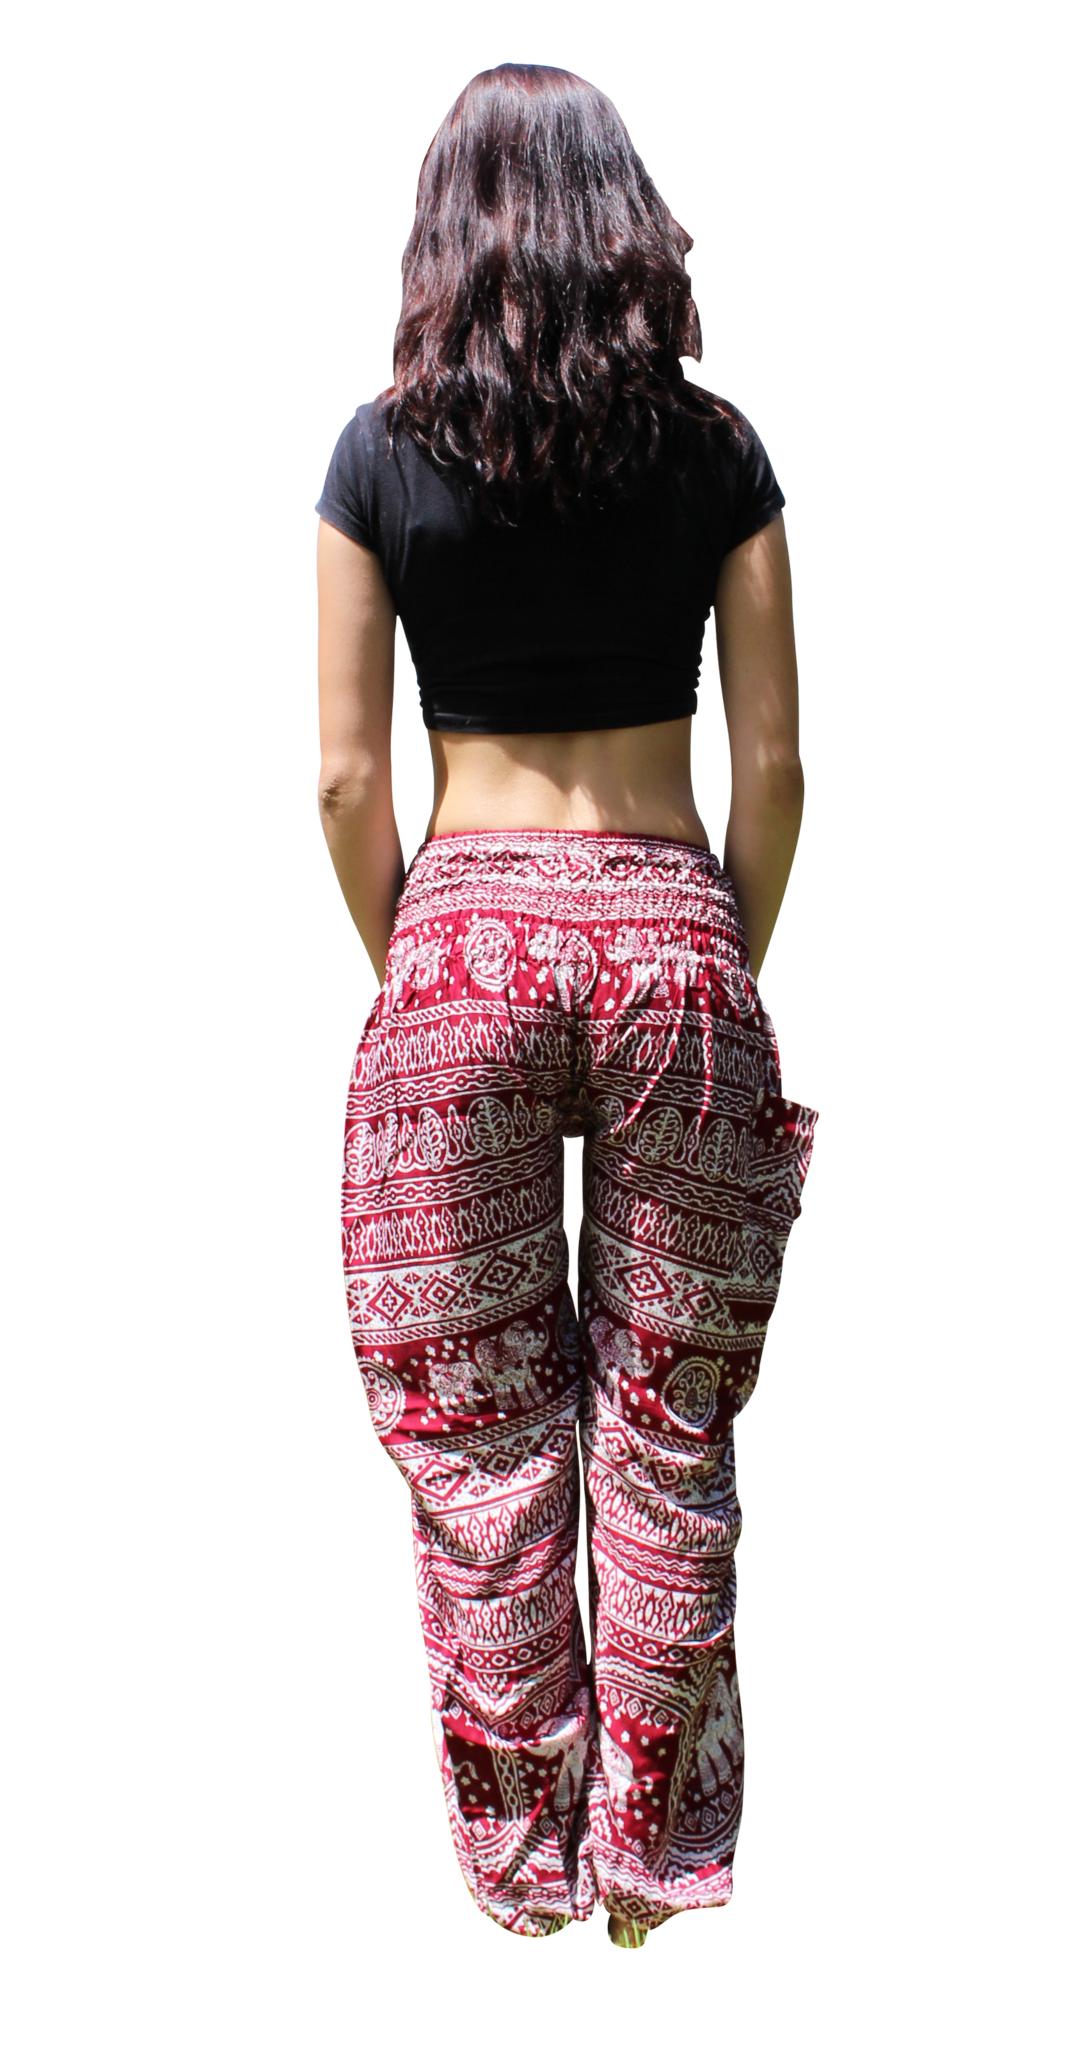 Cotton Harem Pants With Ankle Straps, Thai Yoga Pants, Elephant